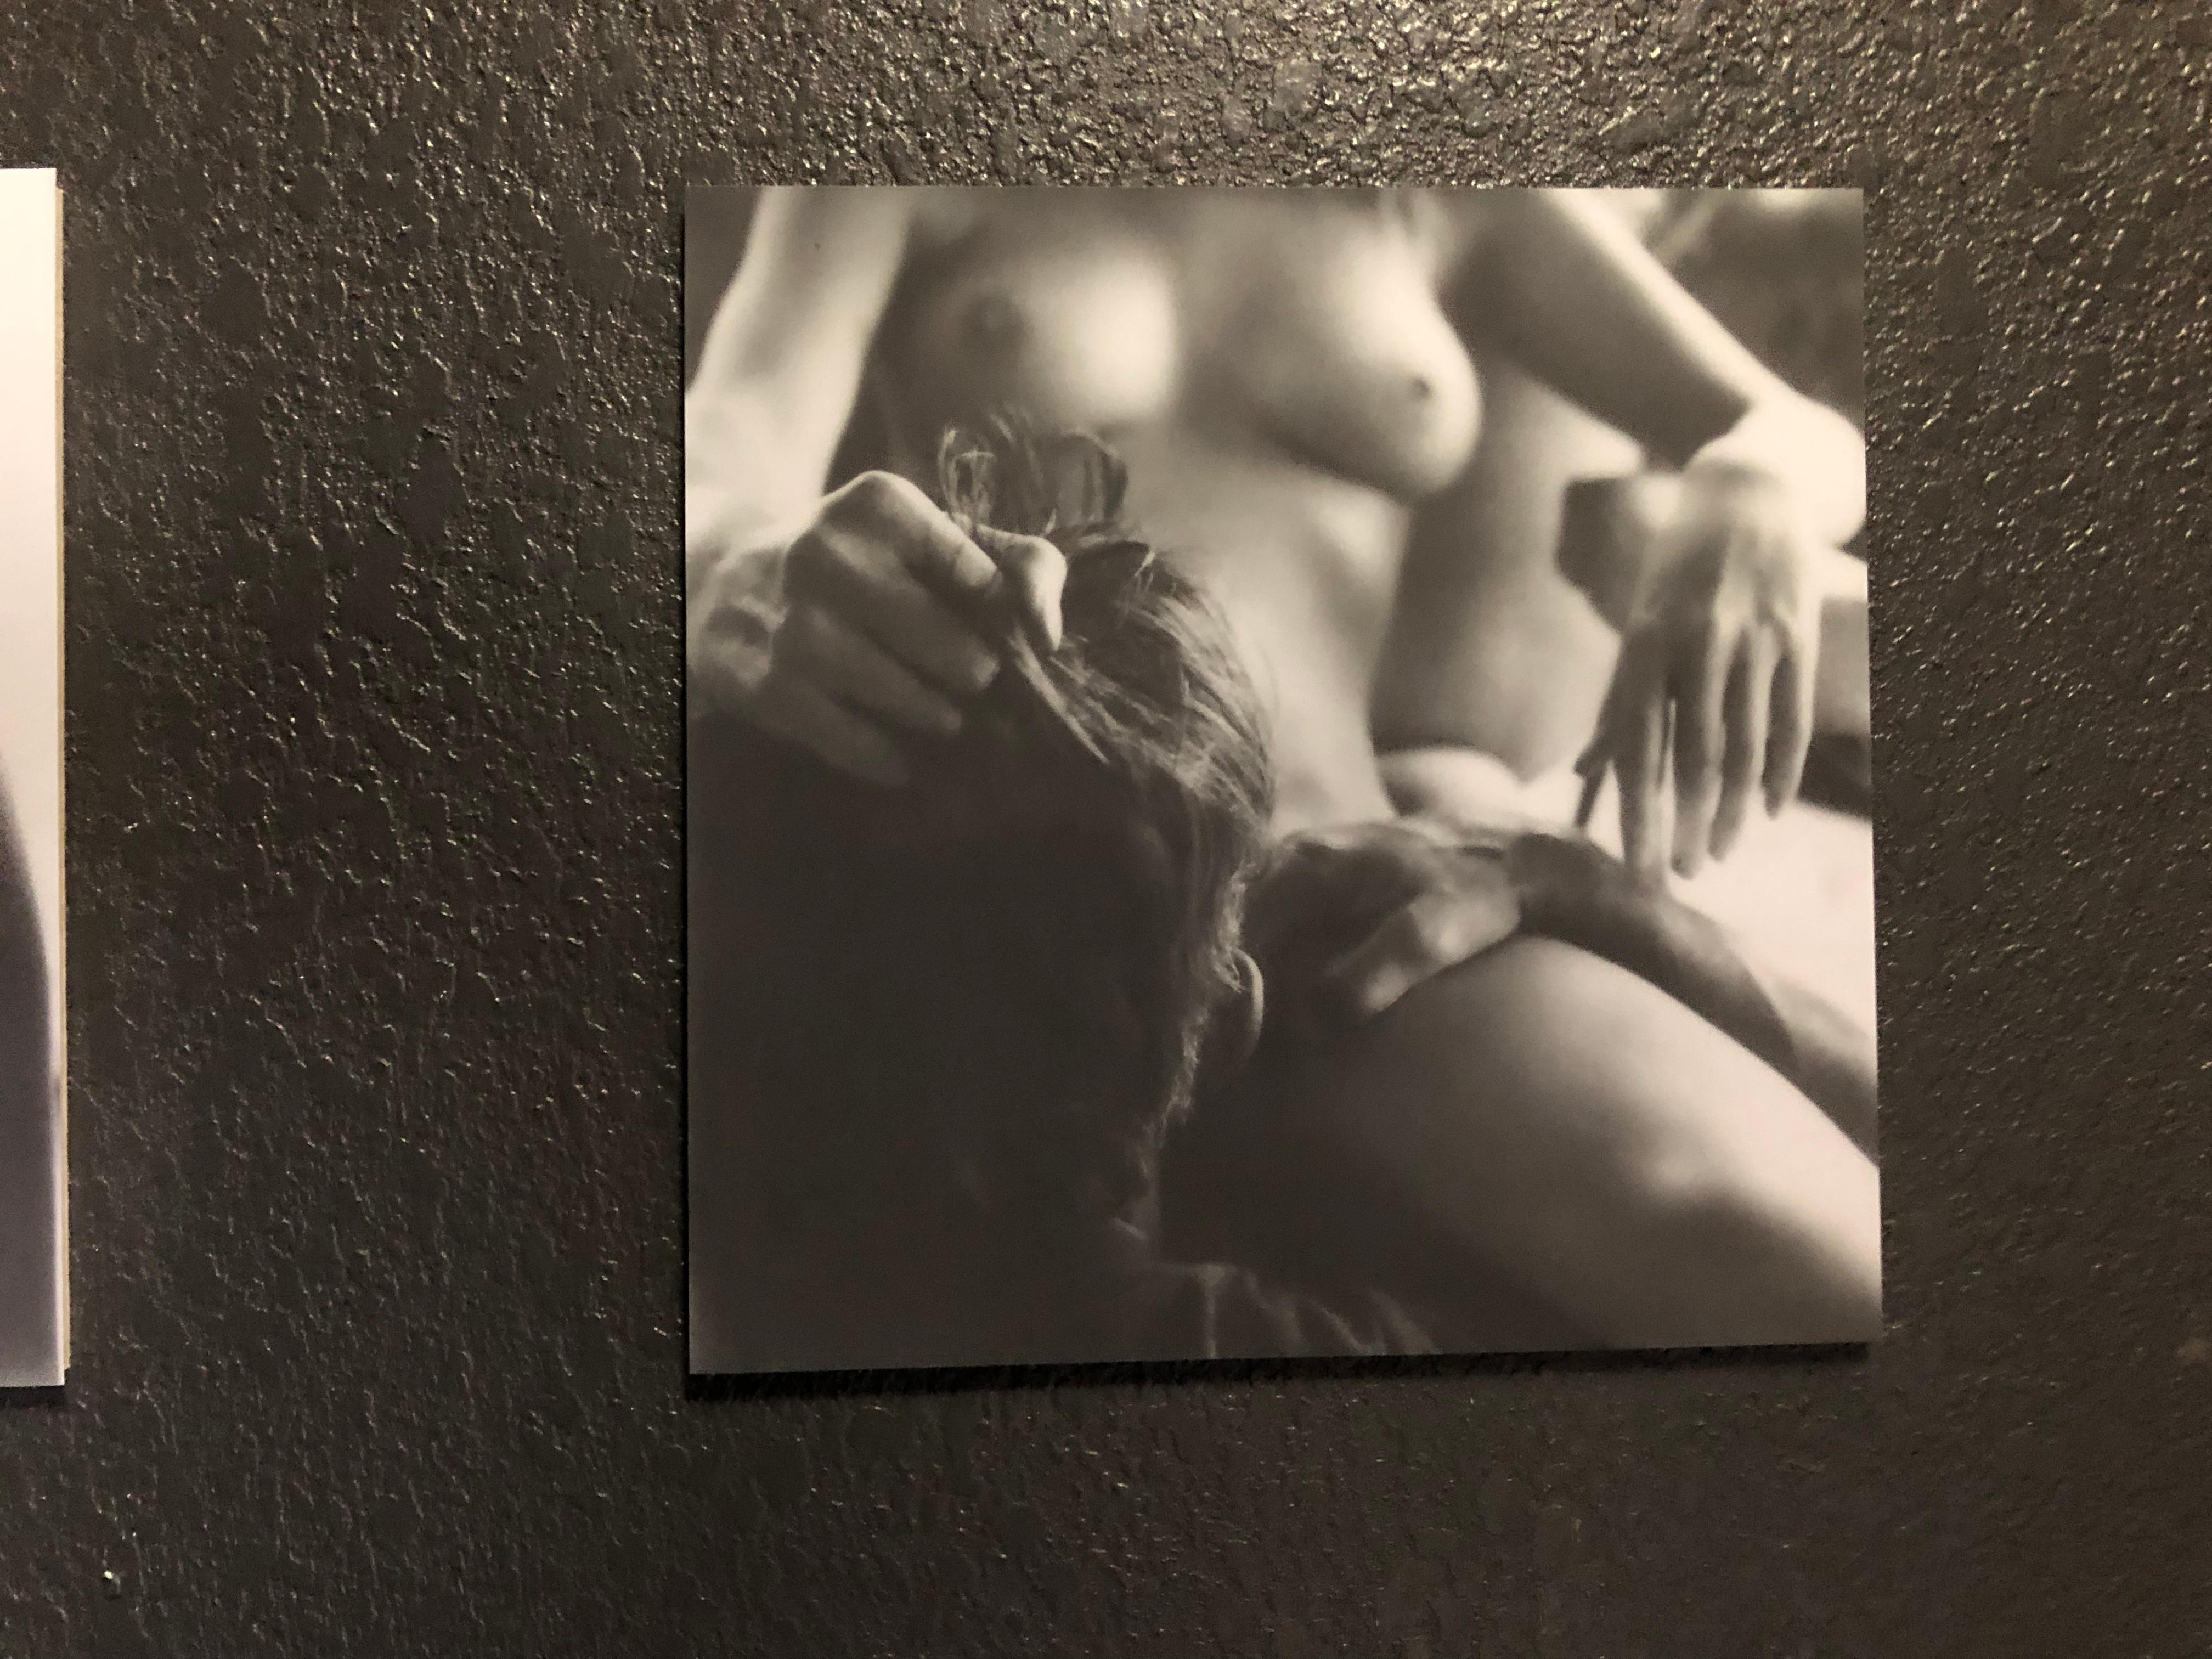 Melt with You – Zeitgenössisch, Nackt, Frauen, Polaroid, 21. Jahrhundert, Farbe – Photograph von Kirsten Thys van den Audenaerde